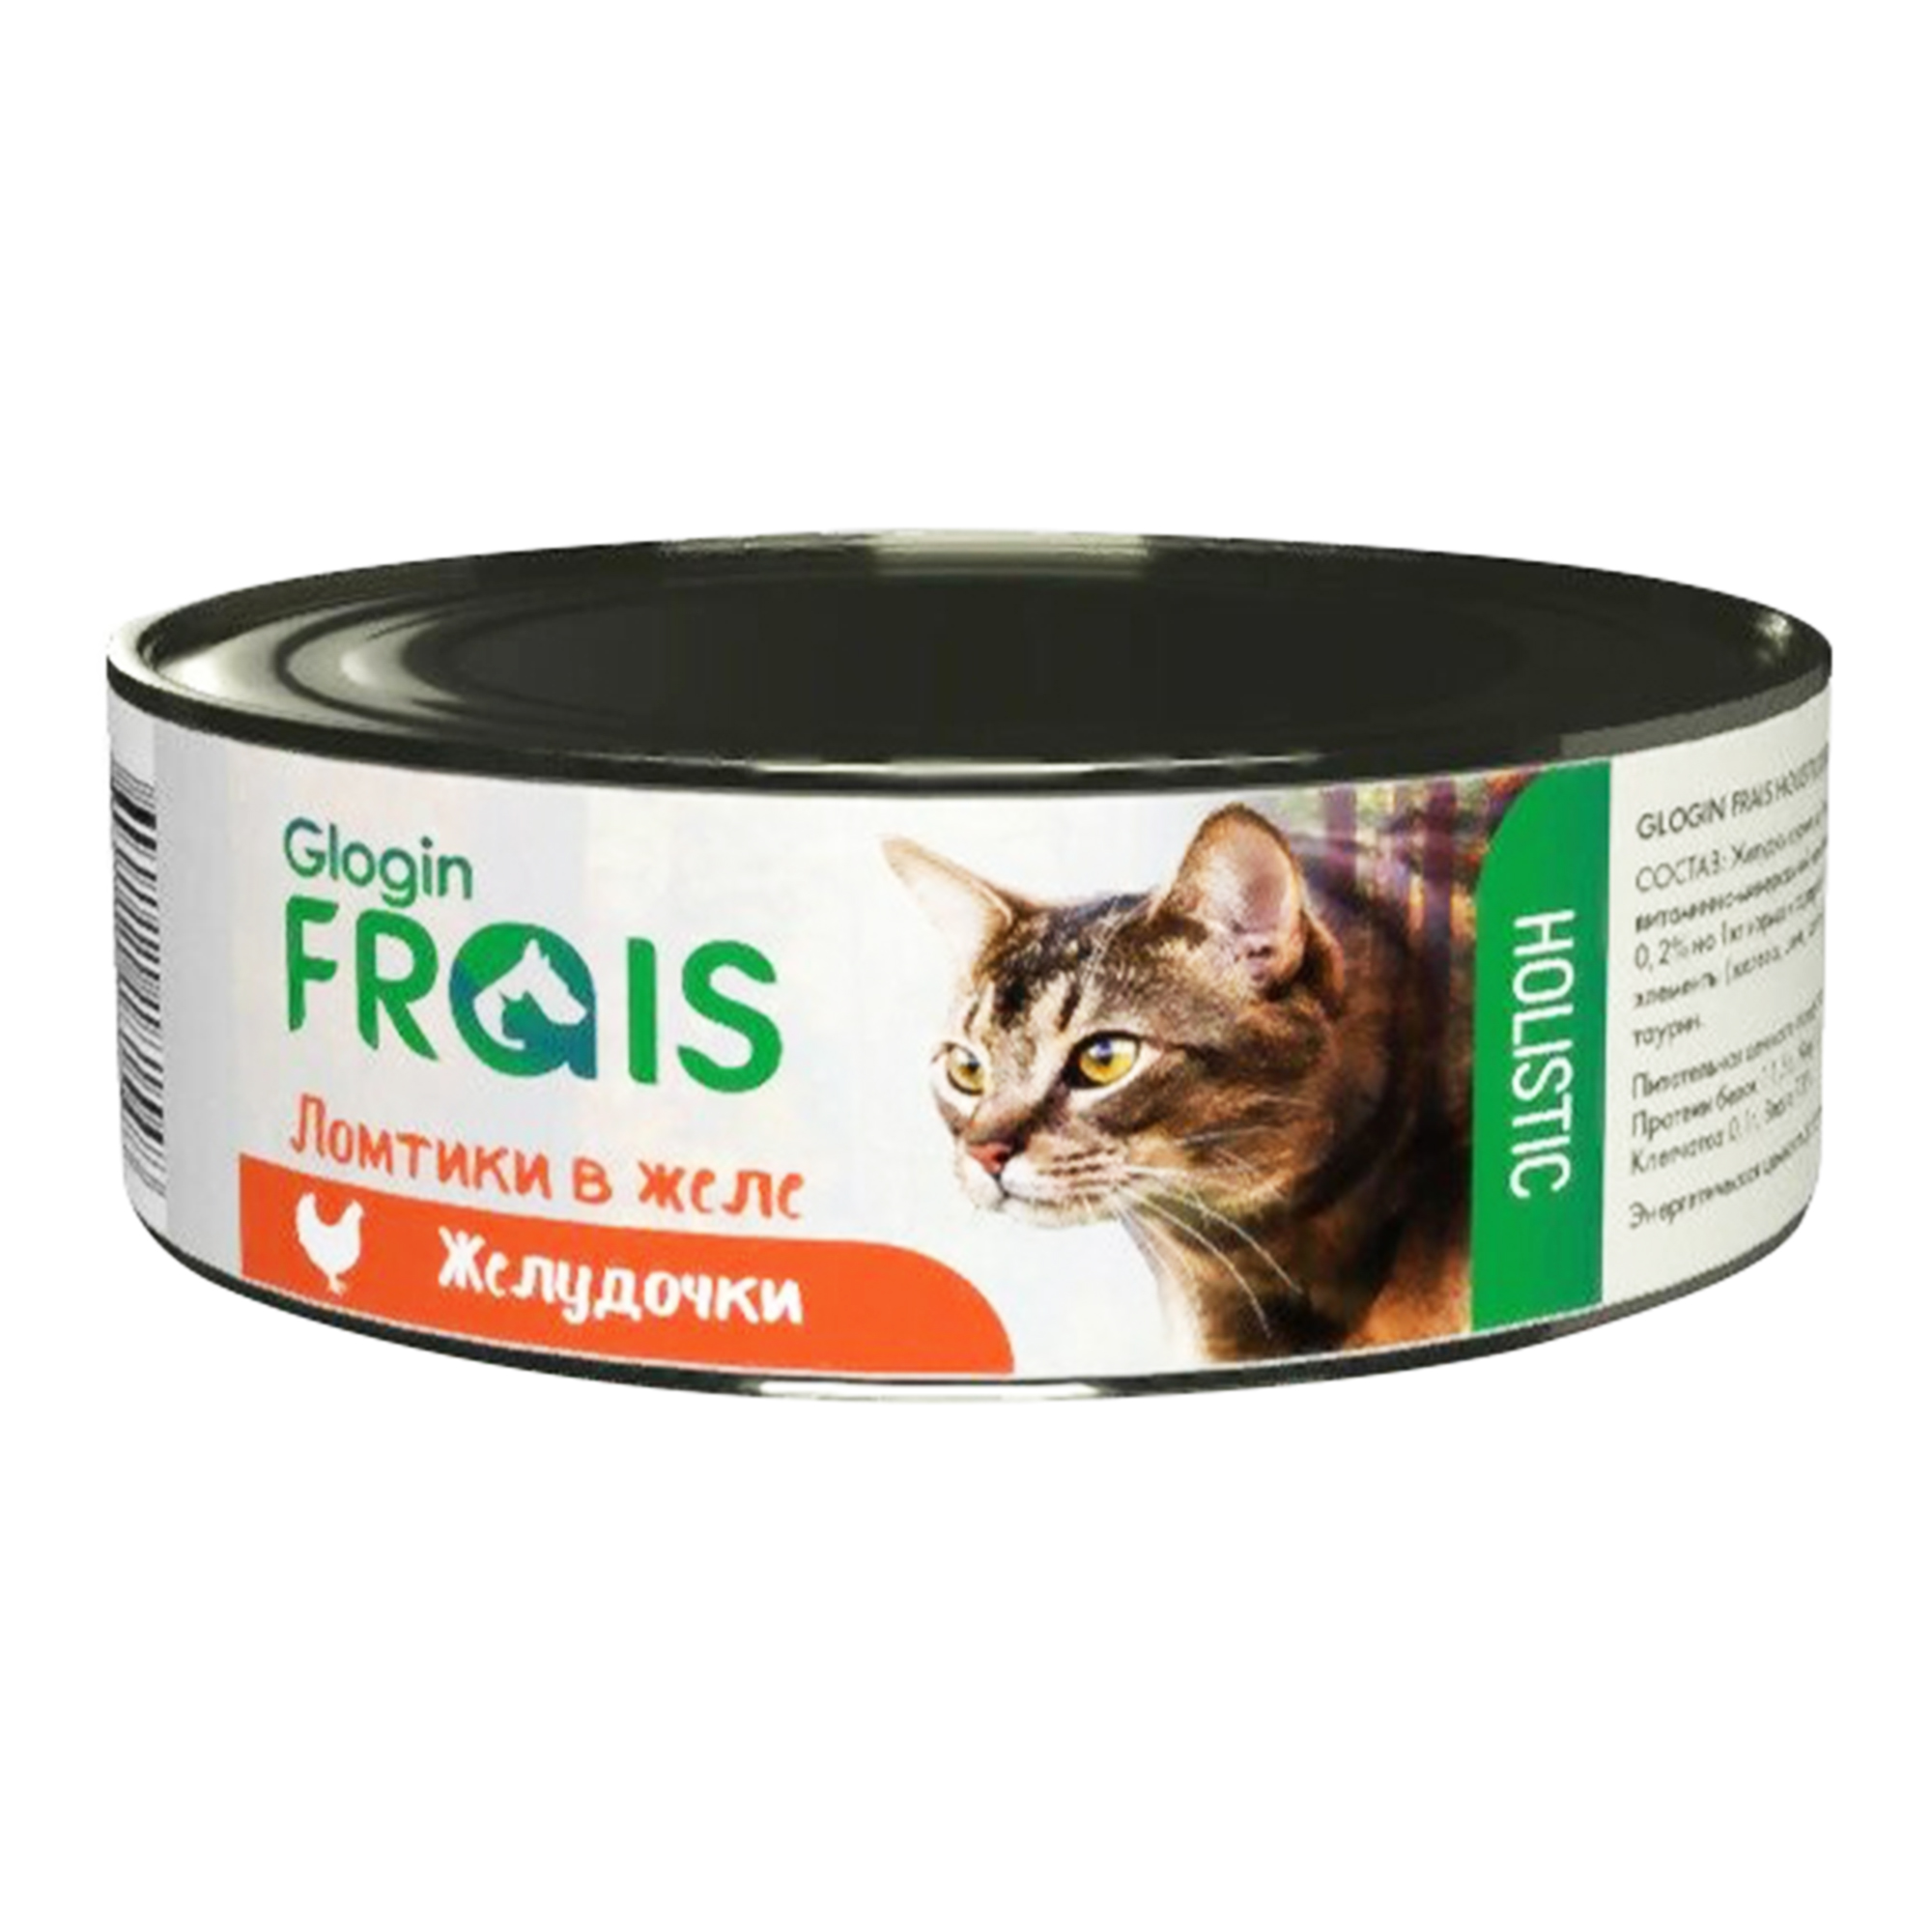 Консервы для кошек FRAIS HOLISTIC, мясо, 100г